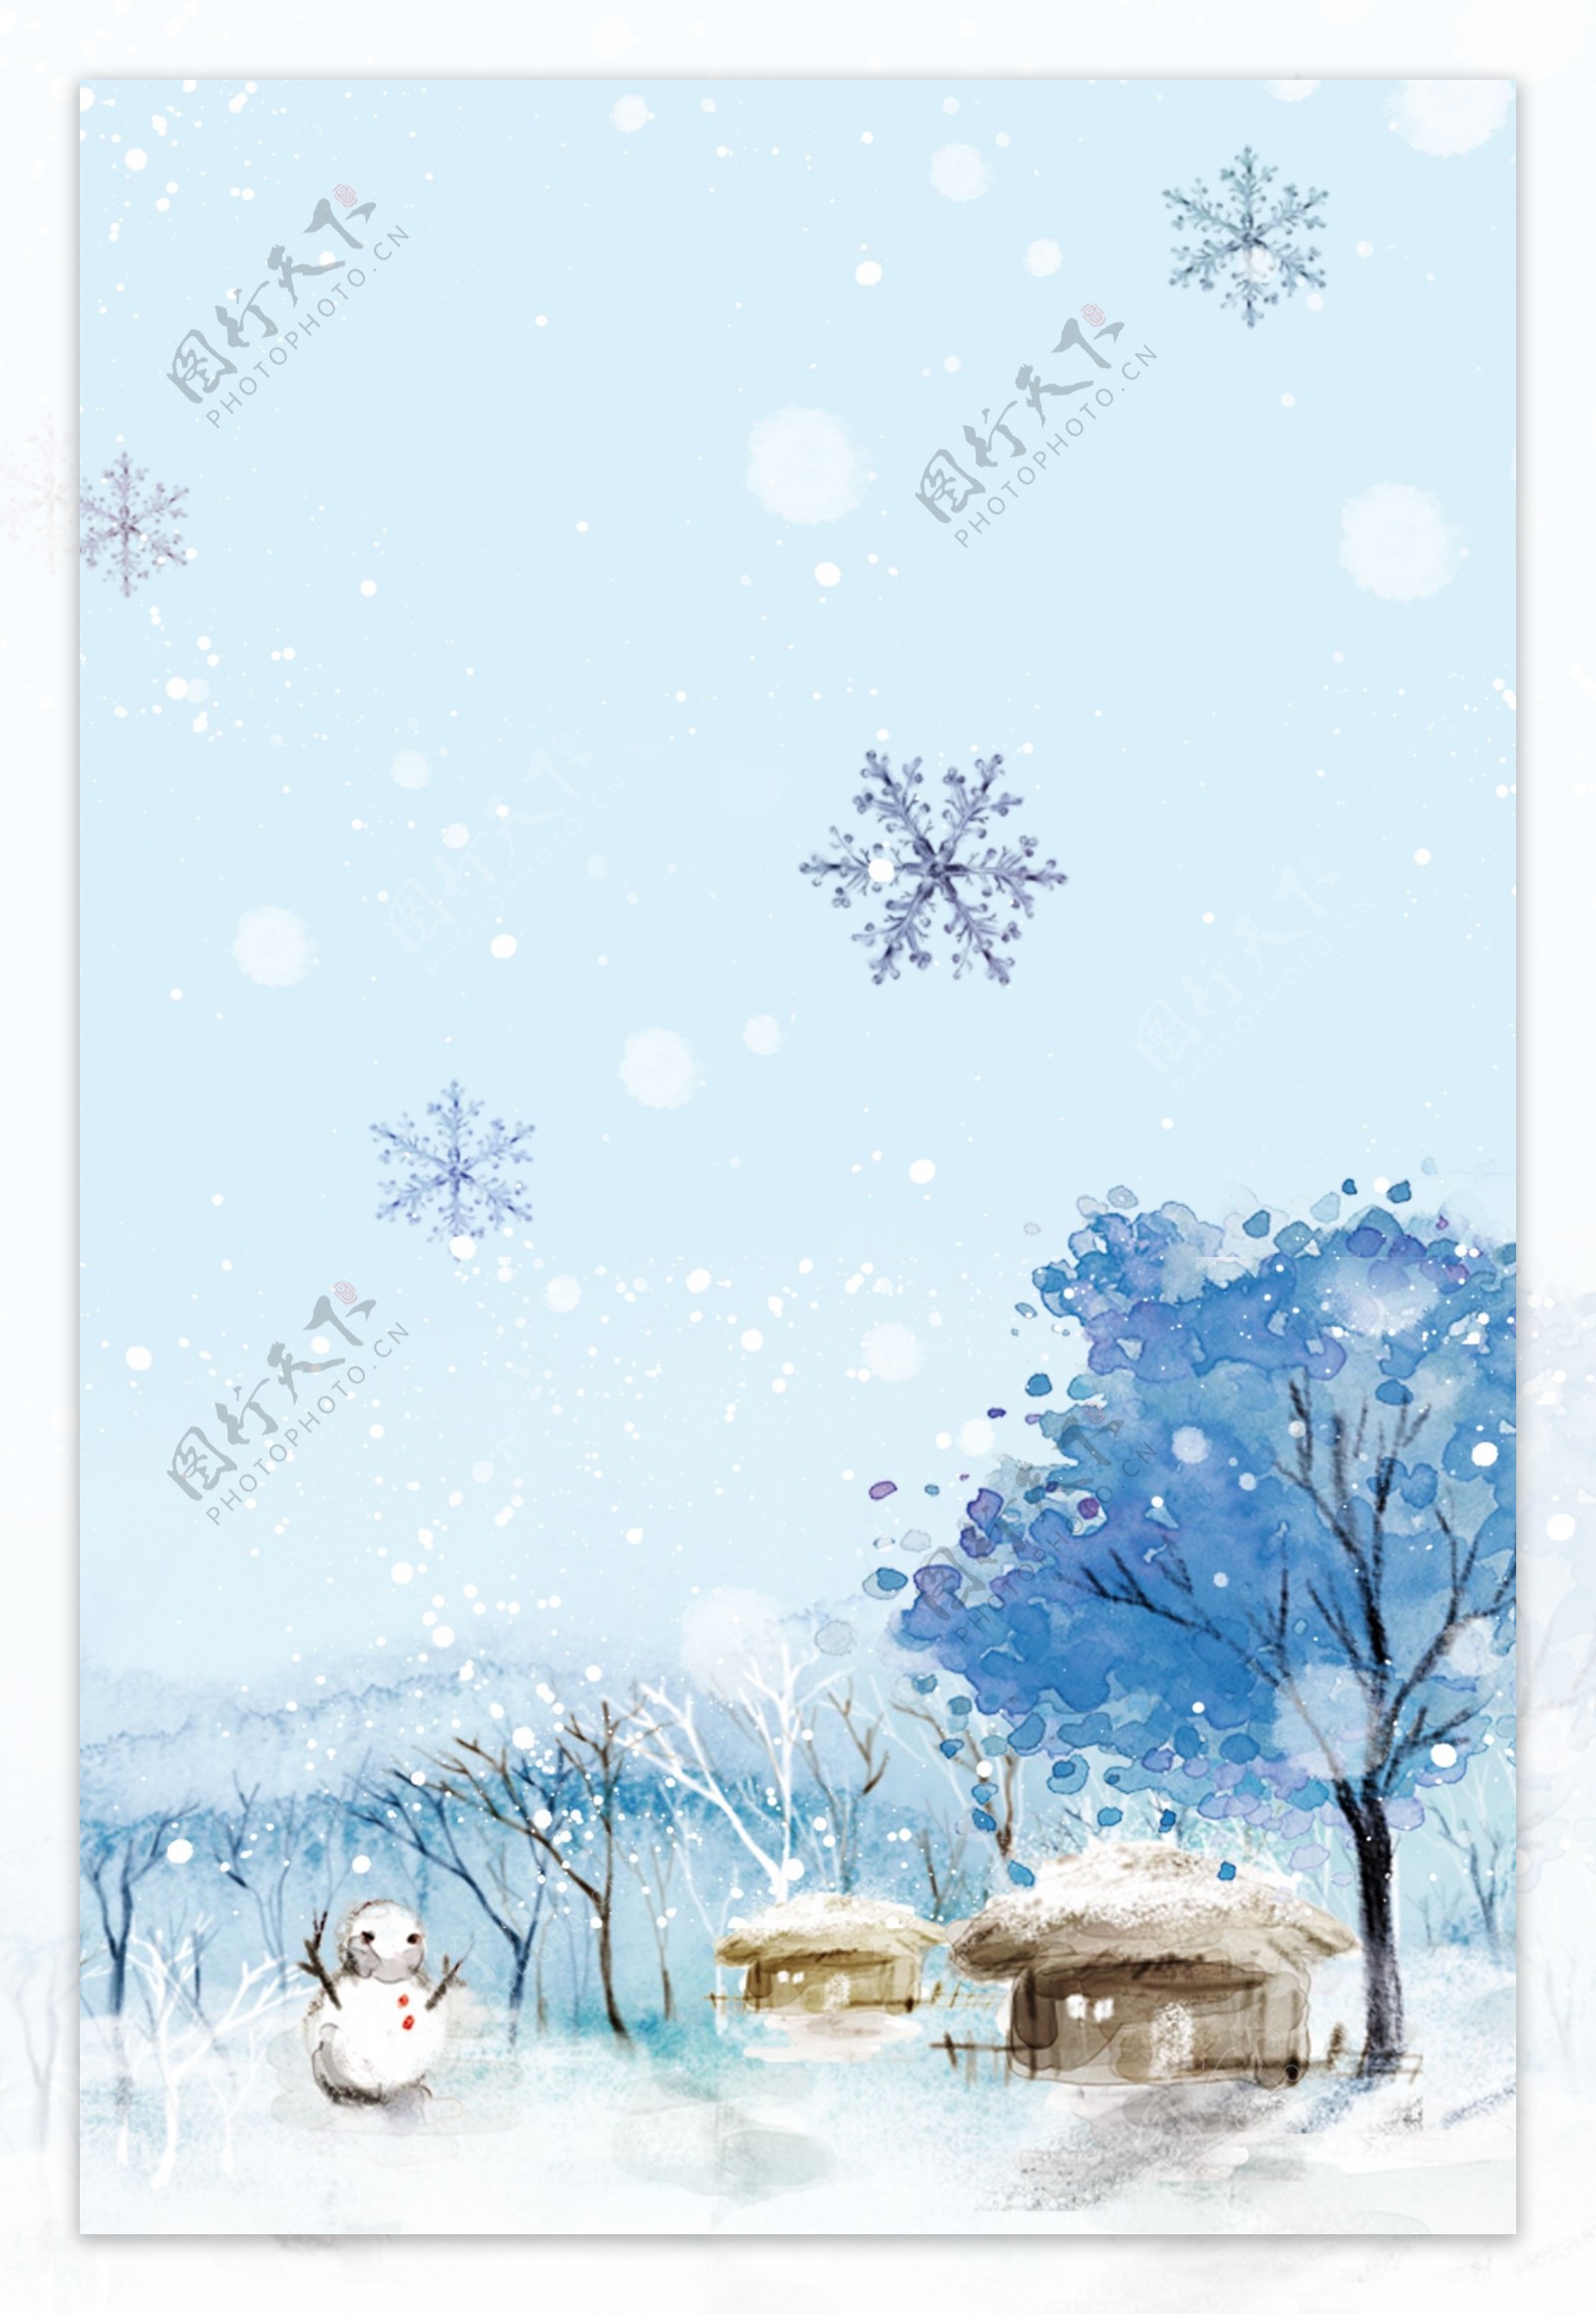 彩绘冬季大雪节背景设计